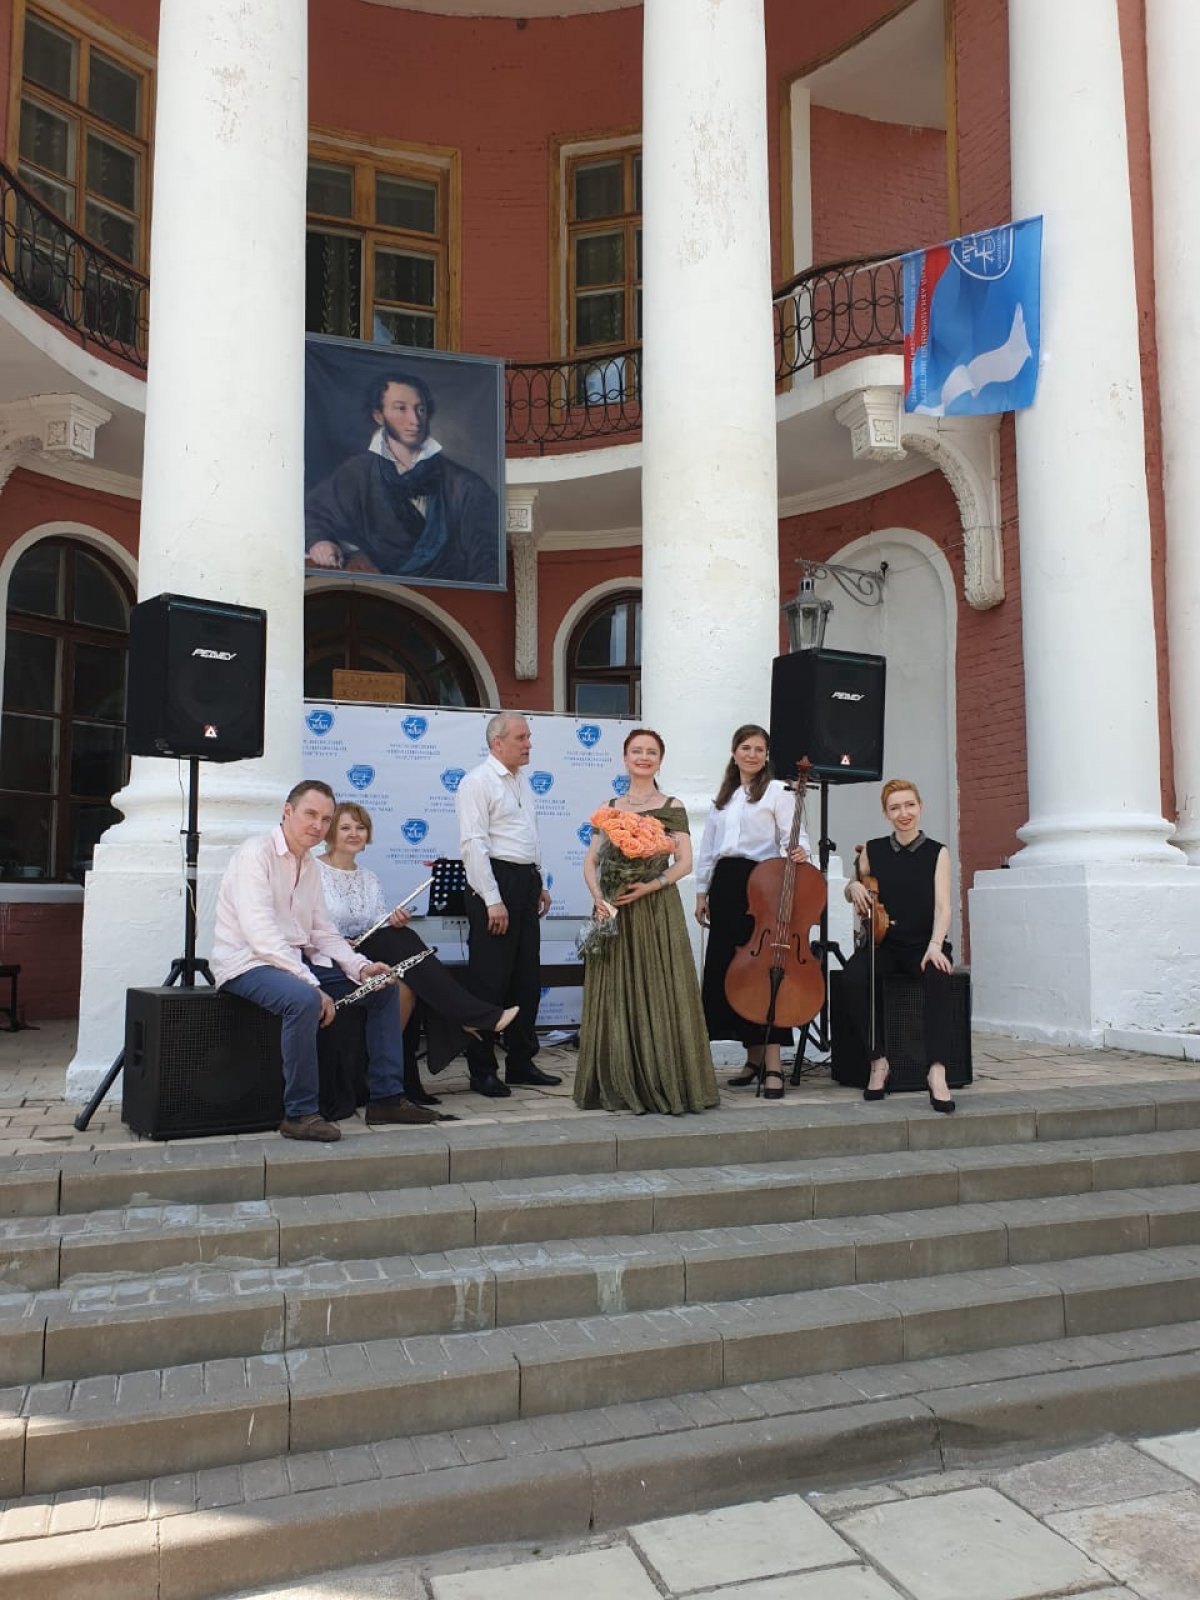 7–8 июня 2019 года в усадьбе «Ярополец» состоялись торжественные мероприятия, посвящённые 220-летию со дня рождения Александра Сергеевича Пушкина.